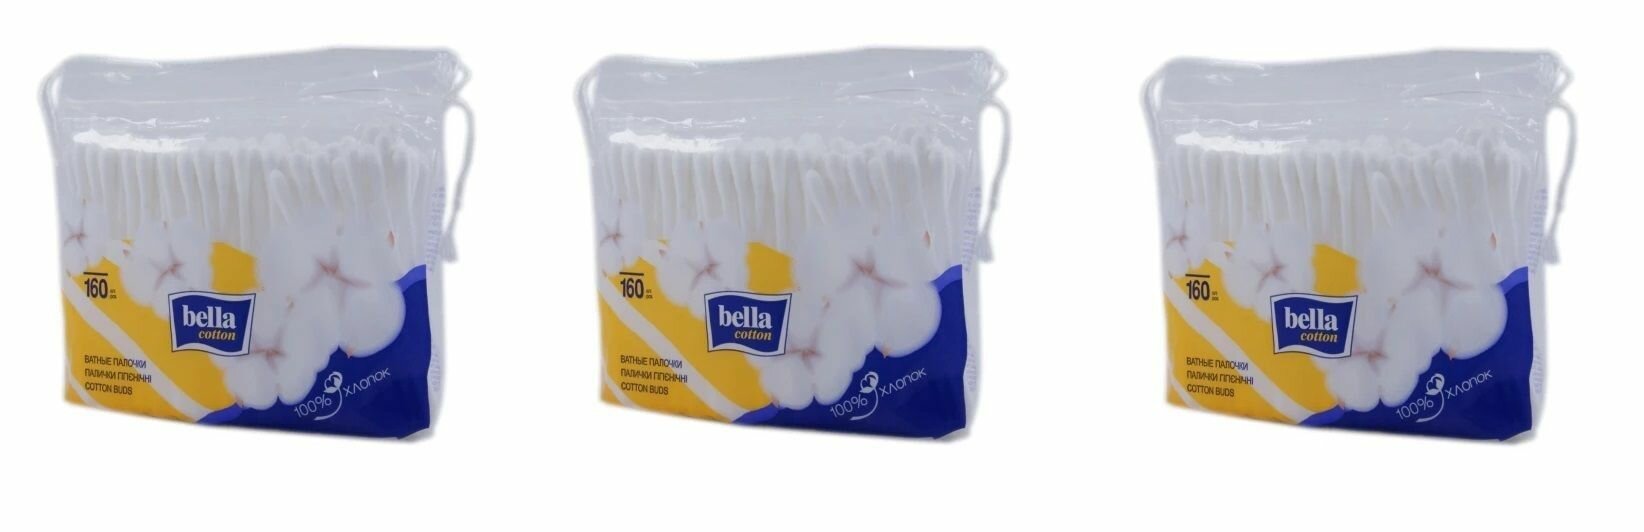 Ватные палочки Bella (Белла) мягкая упаковка, 160 шт х 3уп